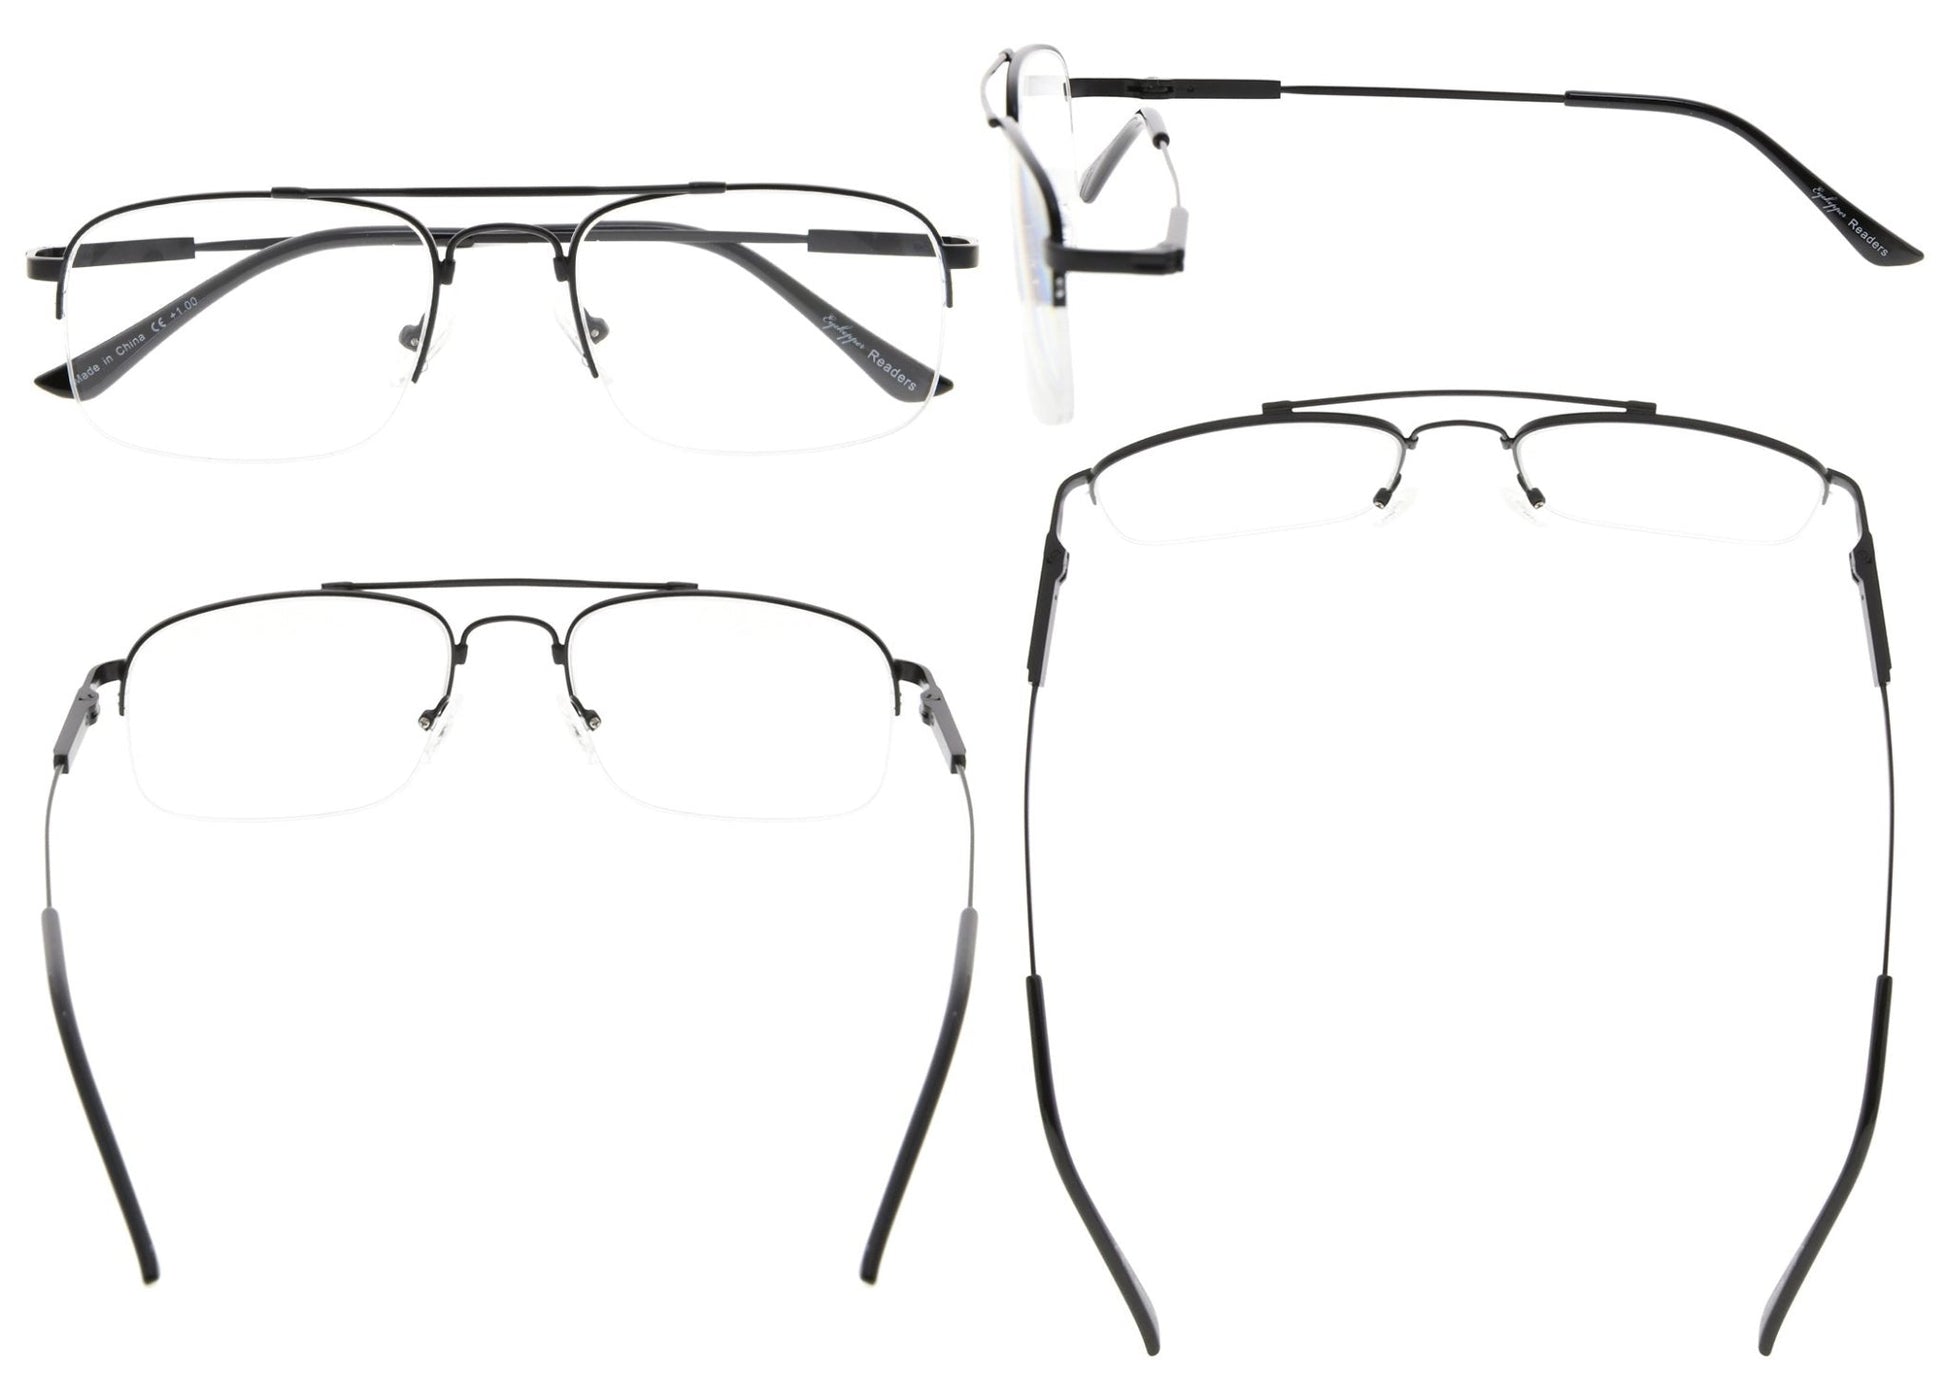 4 Pack Half-Rim Titanium Bendable Reading Glasses R1706